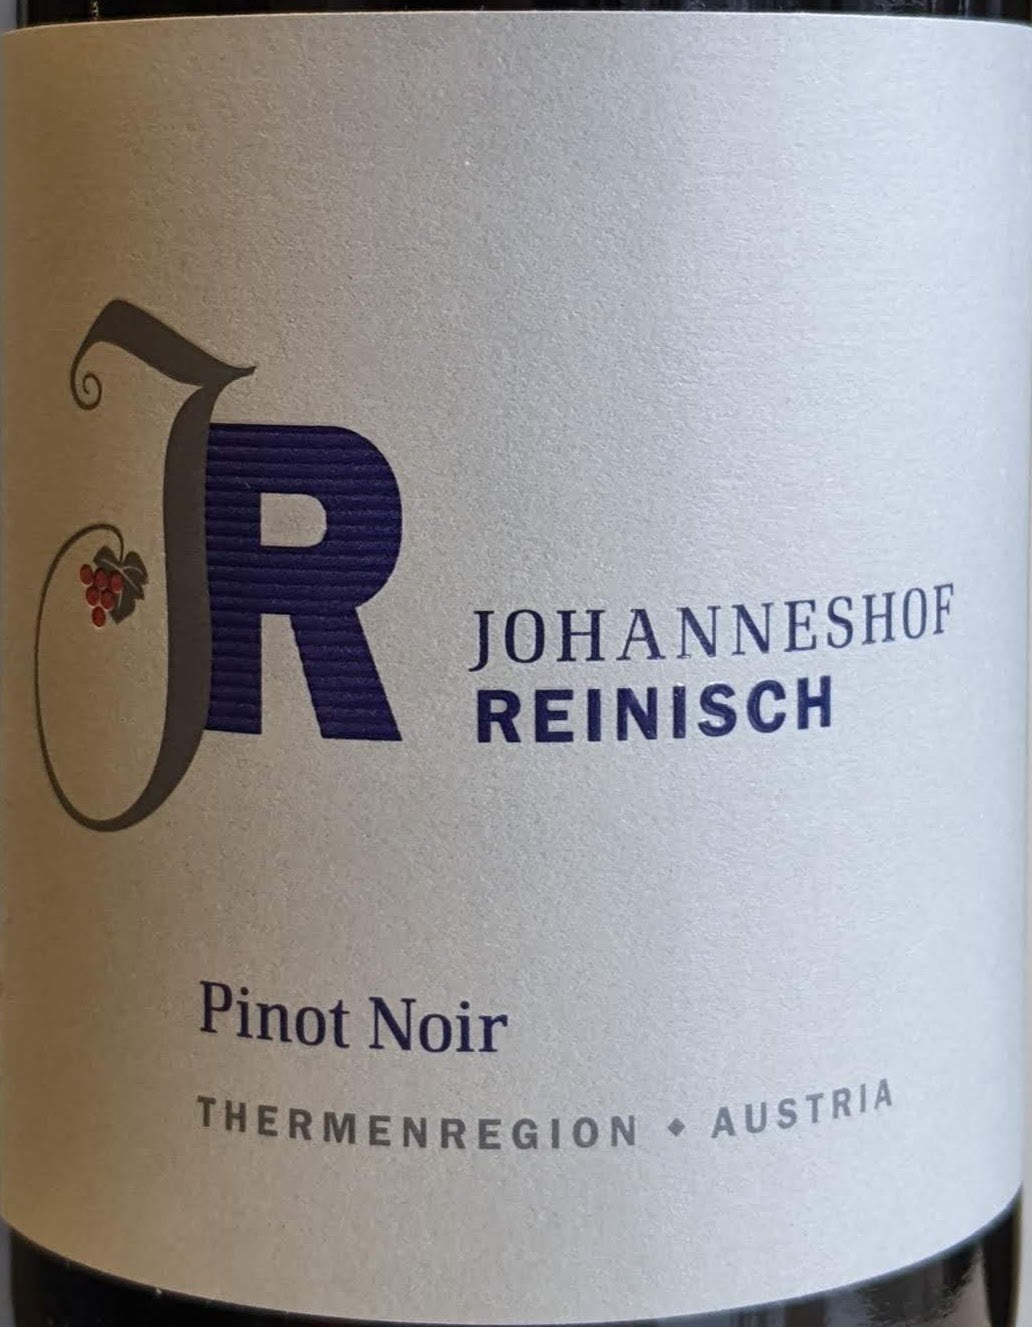 Johanneshof Reinisch - Pinot Noir